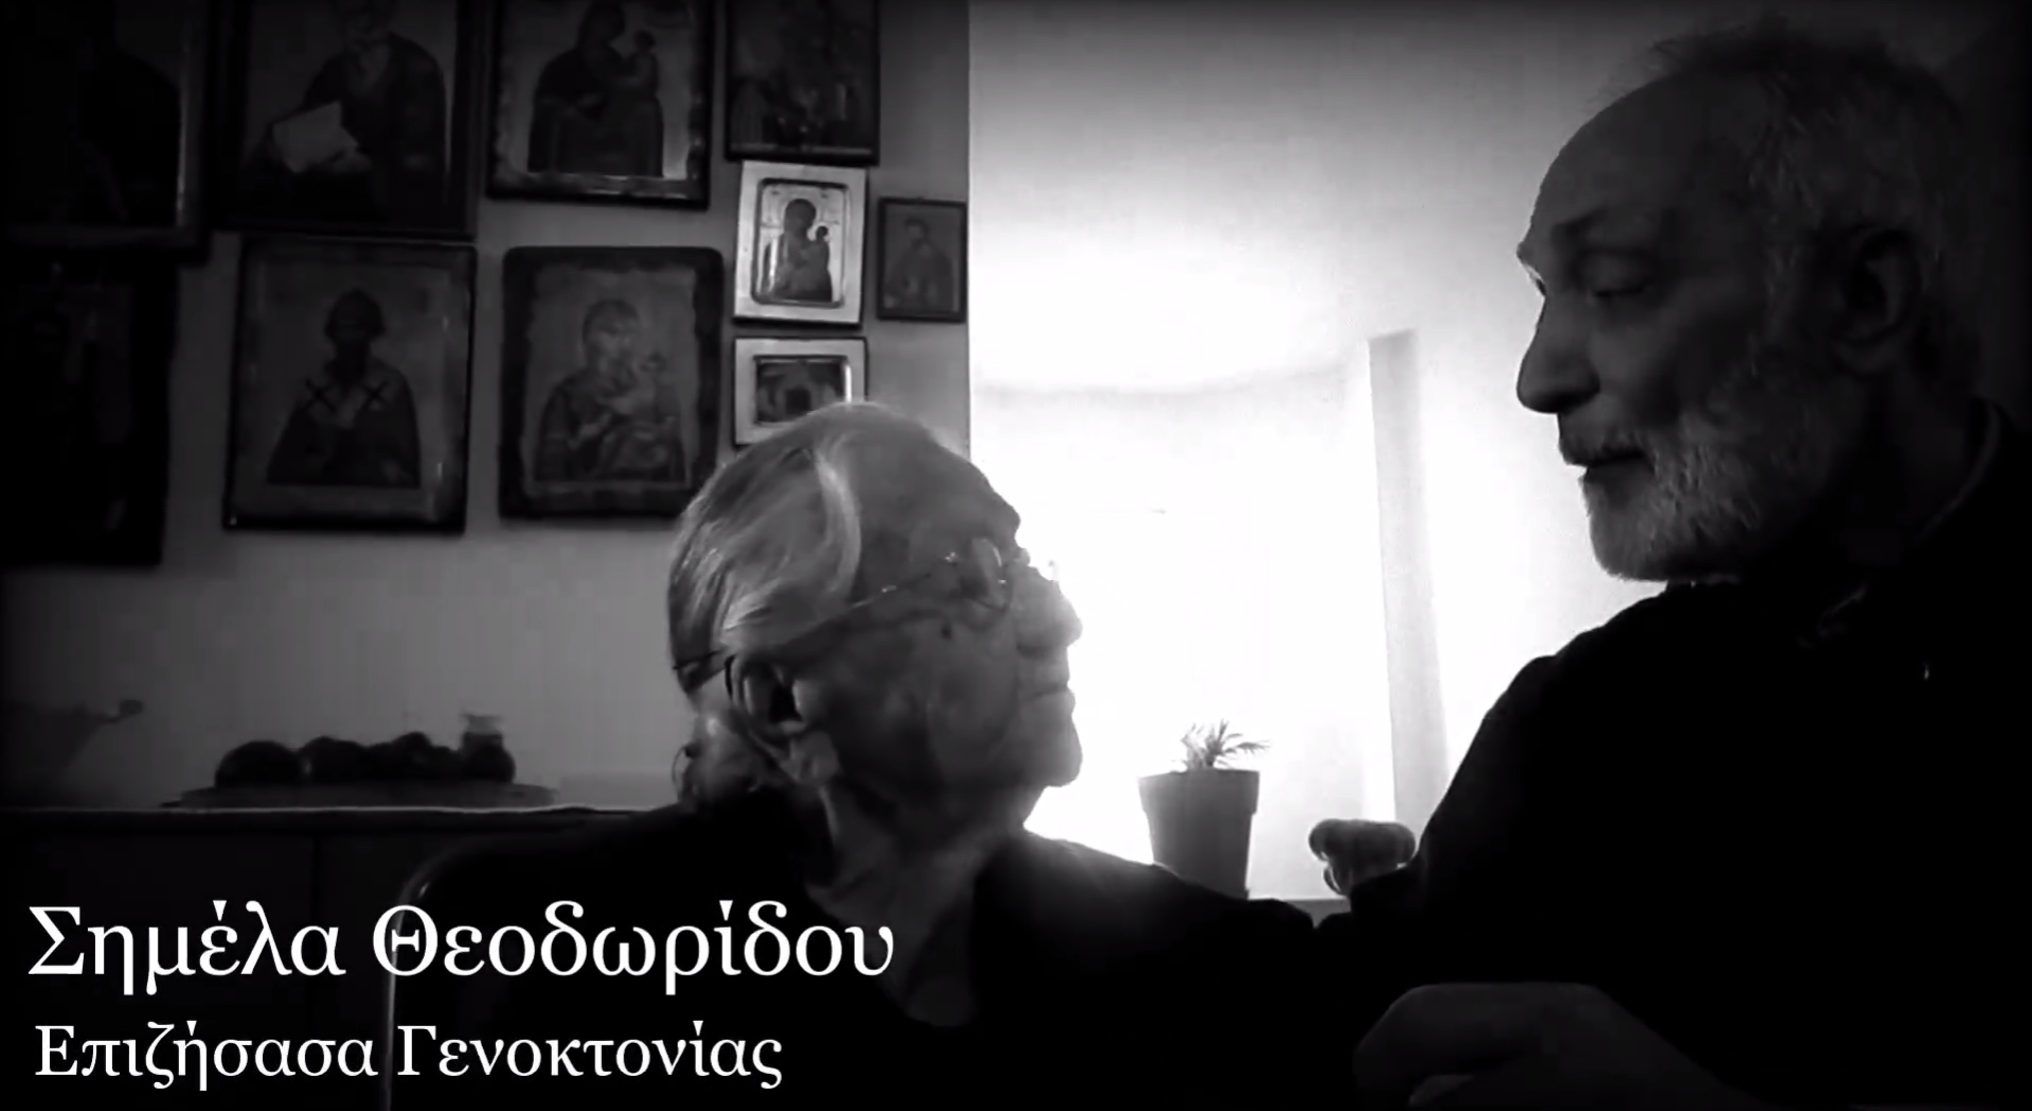 Σωματείο Δράσης Νίκος Καπετανίδης: ” Η γιαγιά Σημέλα απαντά στον Ταγίπ Ερντογάν”